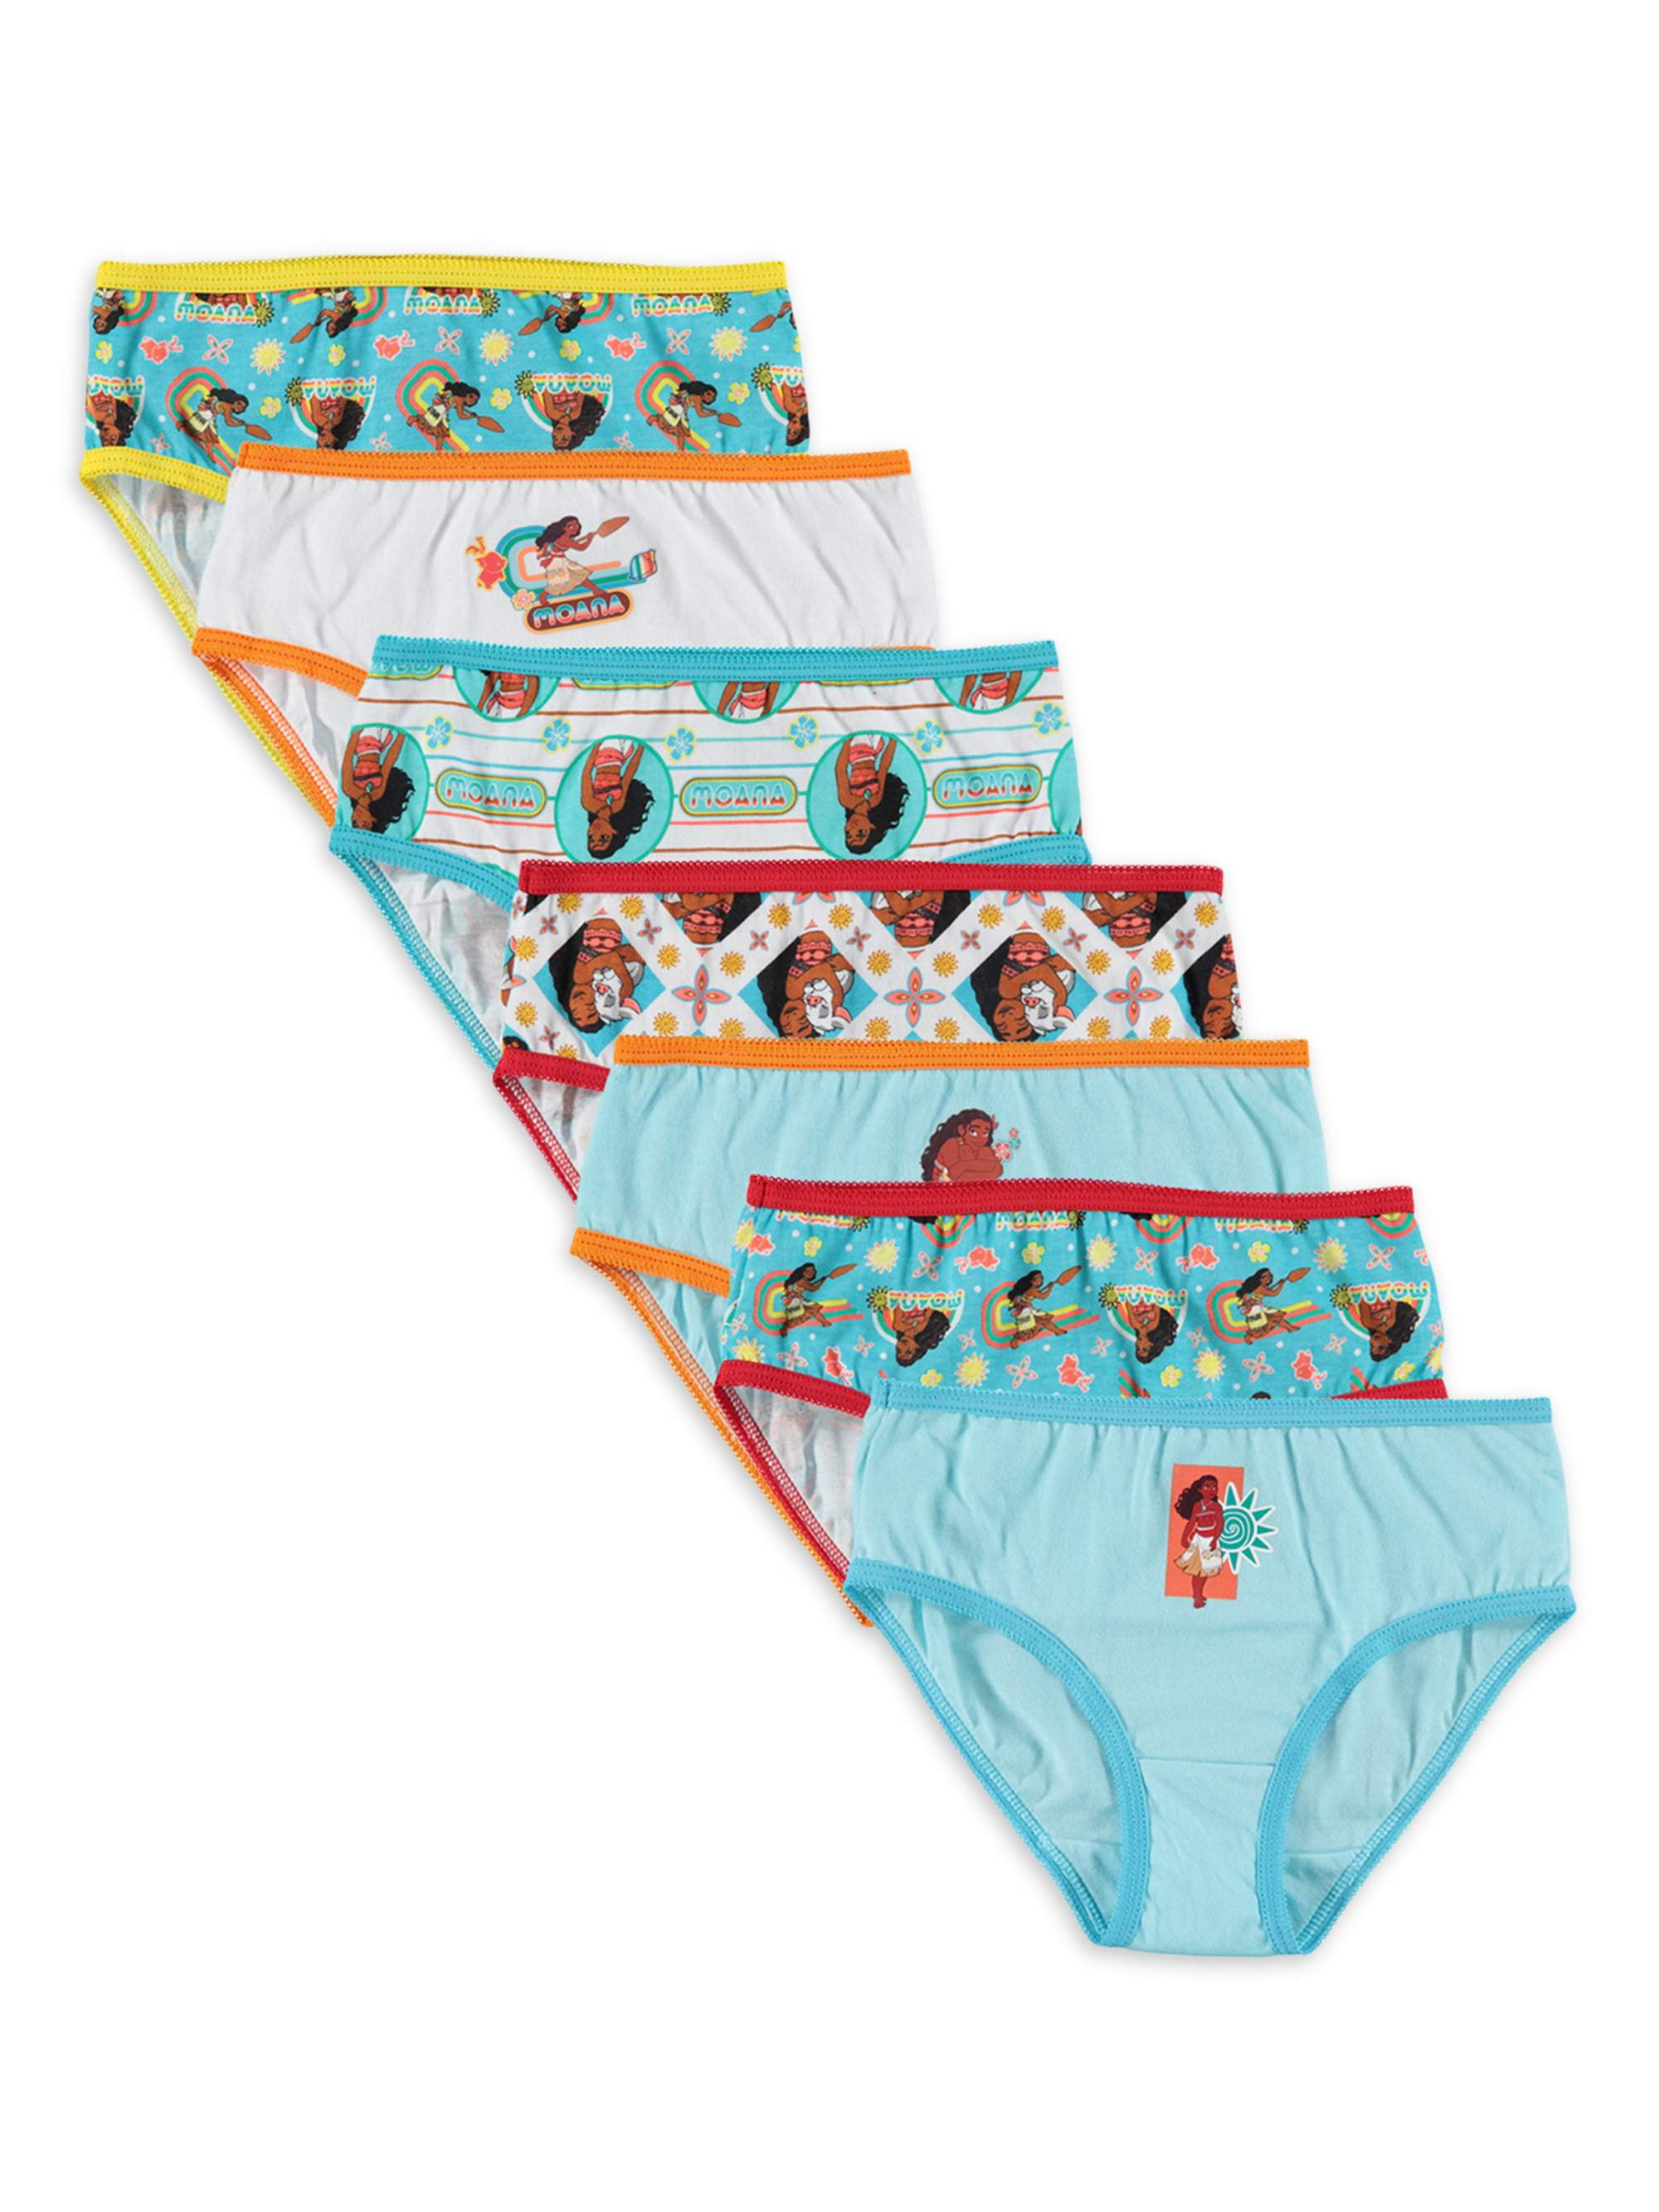 Moana Girls Underwear, 7 Pack Panties (Little Girls & Big Girls) 